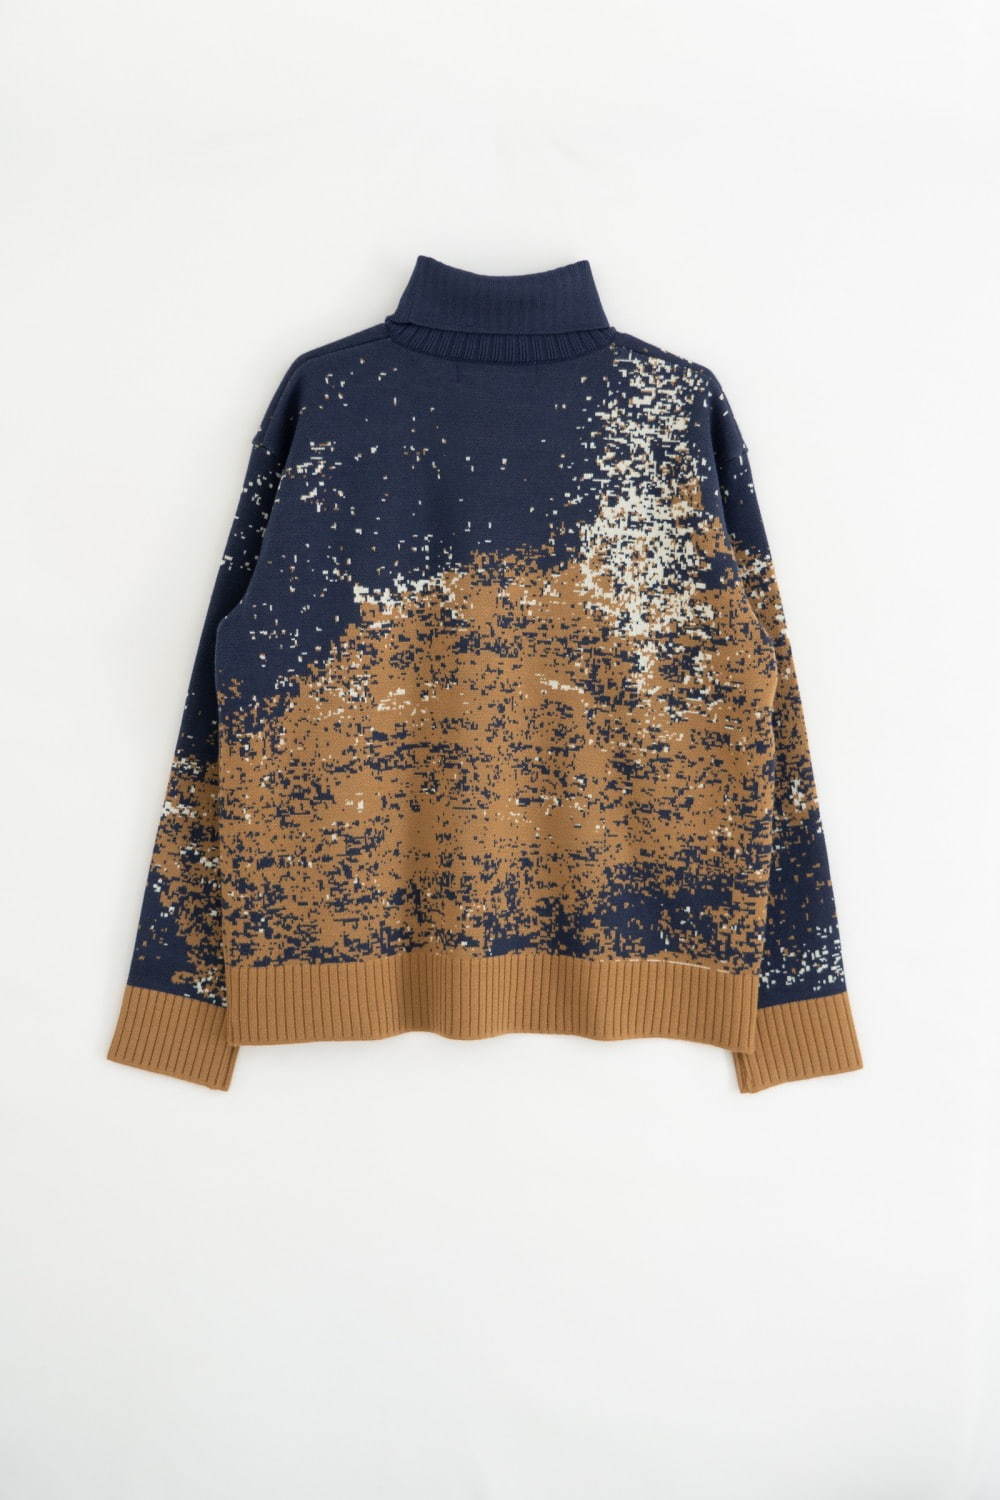 身幅約56cmMURRAL ray of light knit sweater (navy) - トップス